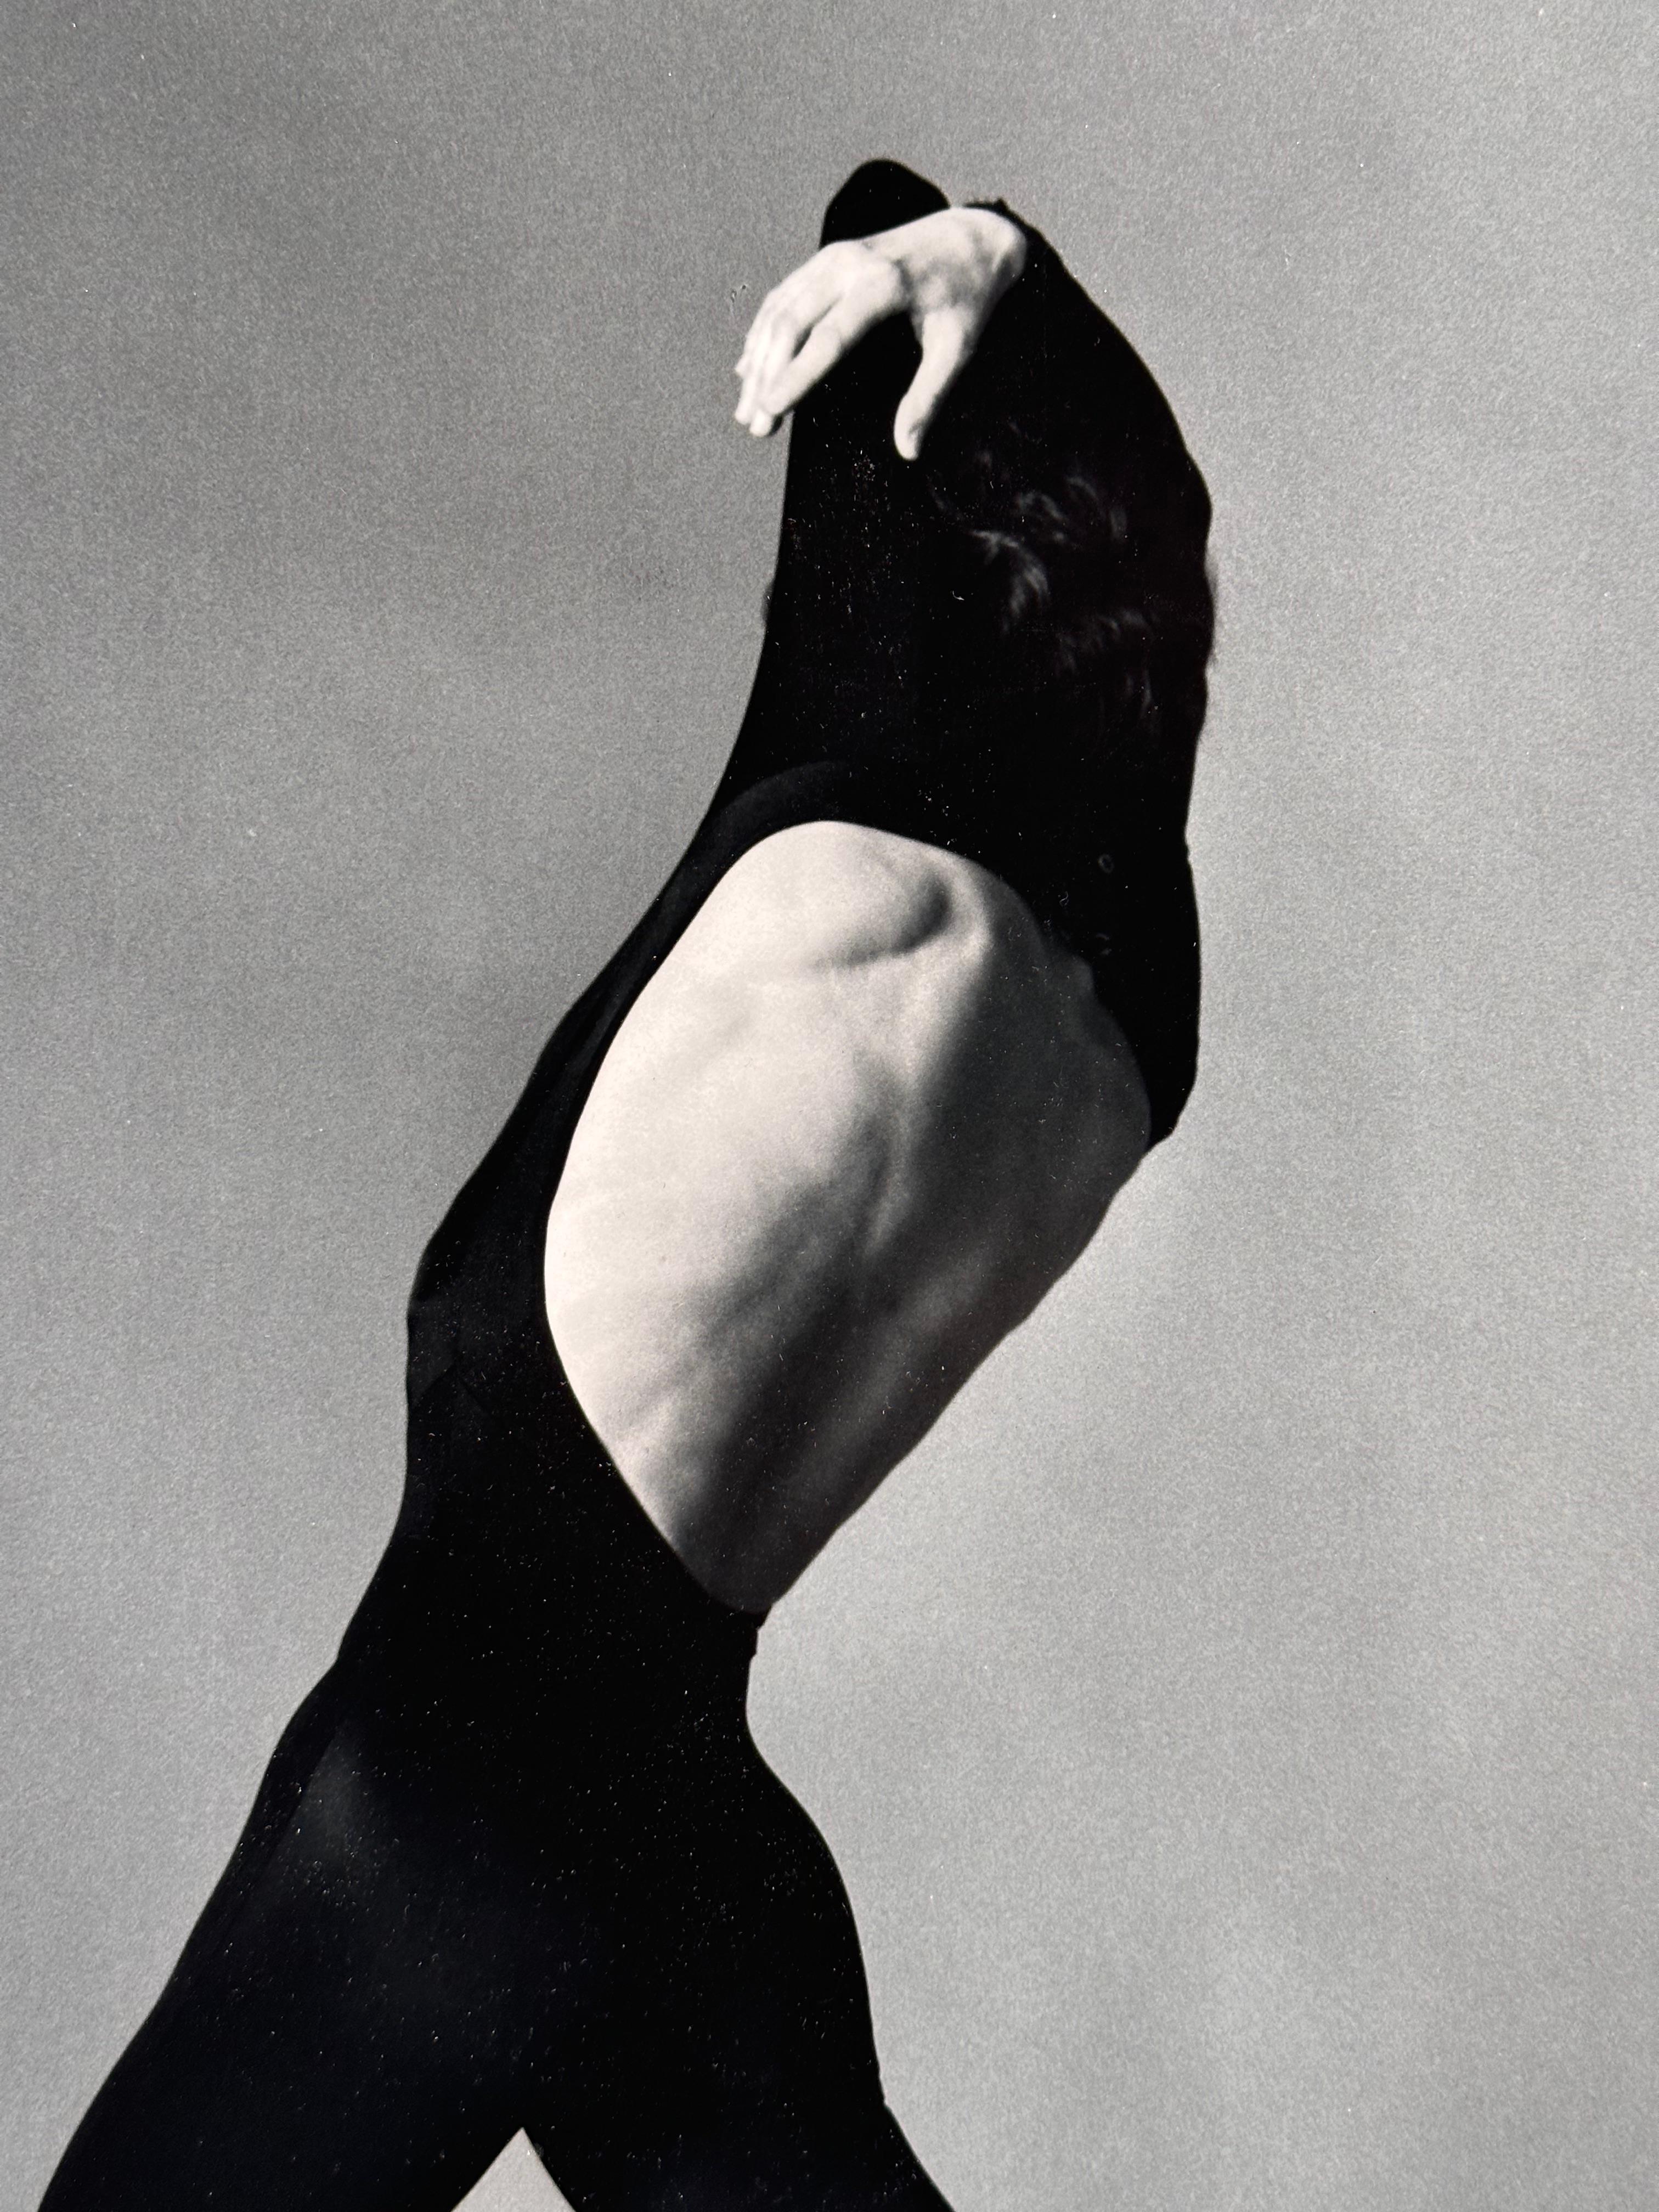  Pascale Faye n°1, photo de danseuse - Photograph de Howard Schatz